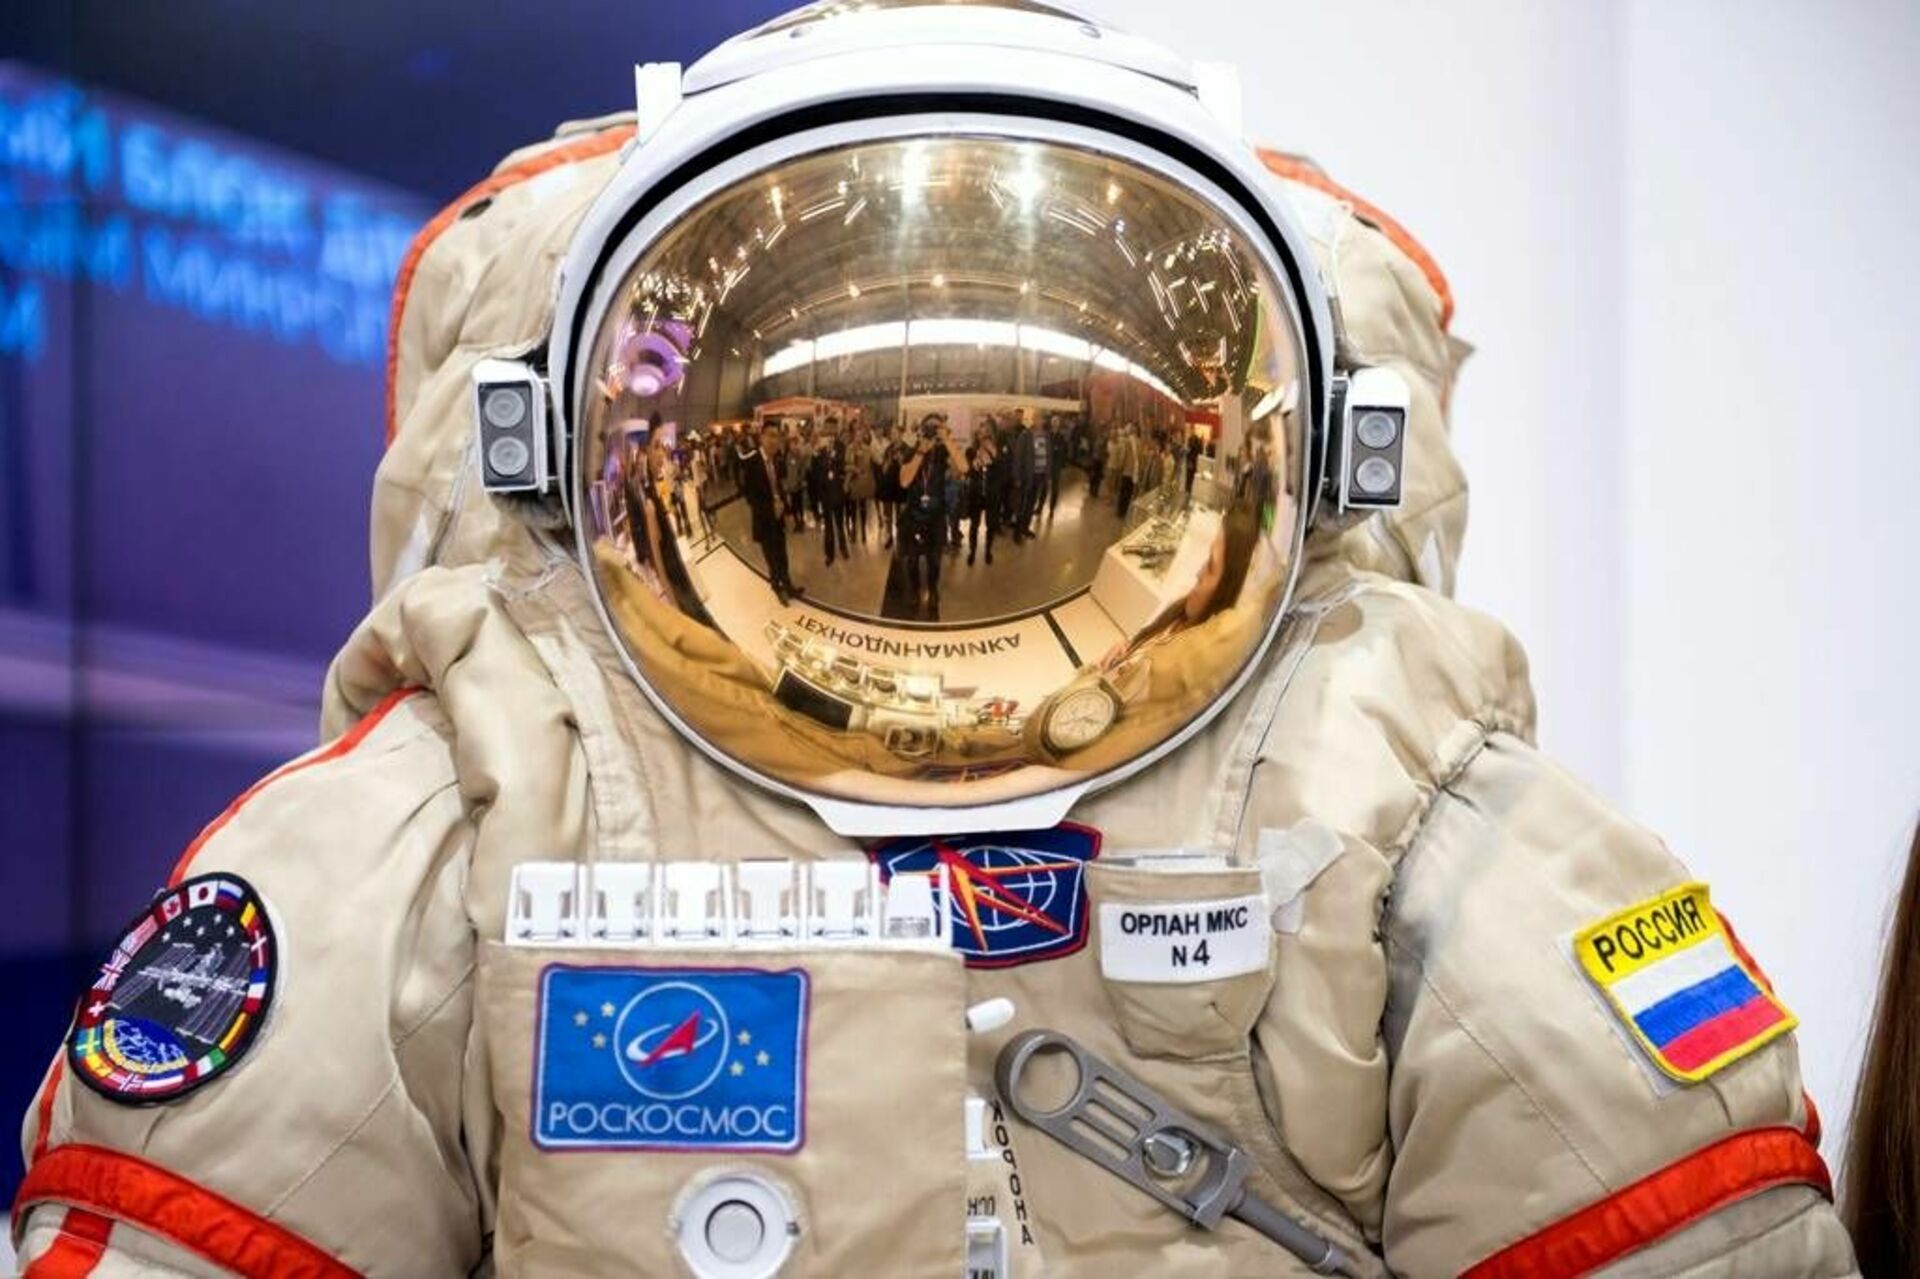 Скафандр российского космонавта. Скафандр Космонавта Орлан МКС. Шлем Орлан МКС. Орлан костюм Космонавта. Скафандр для выхода в открытый космос Орлан.